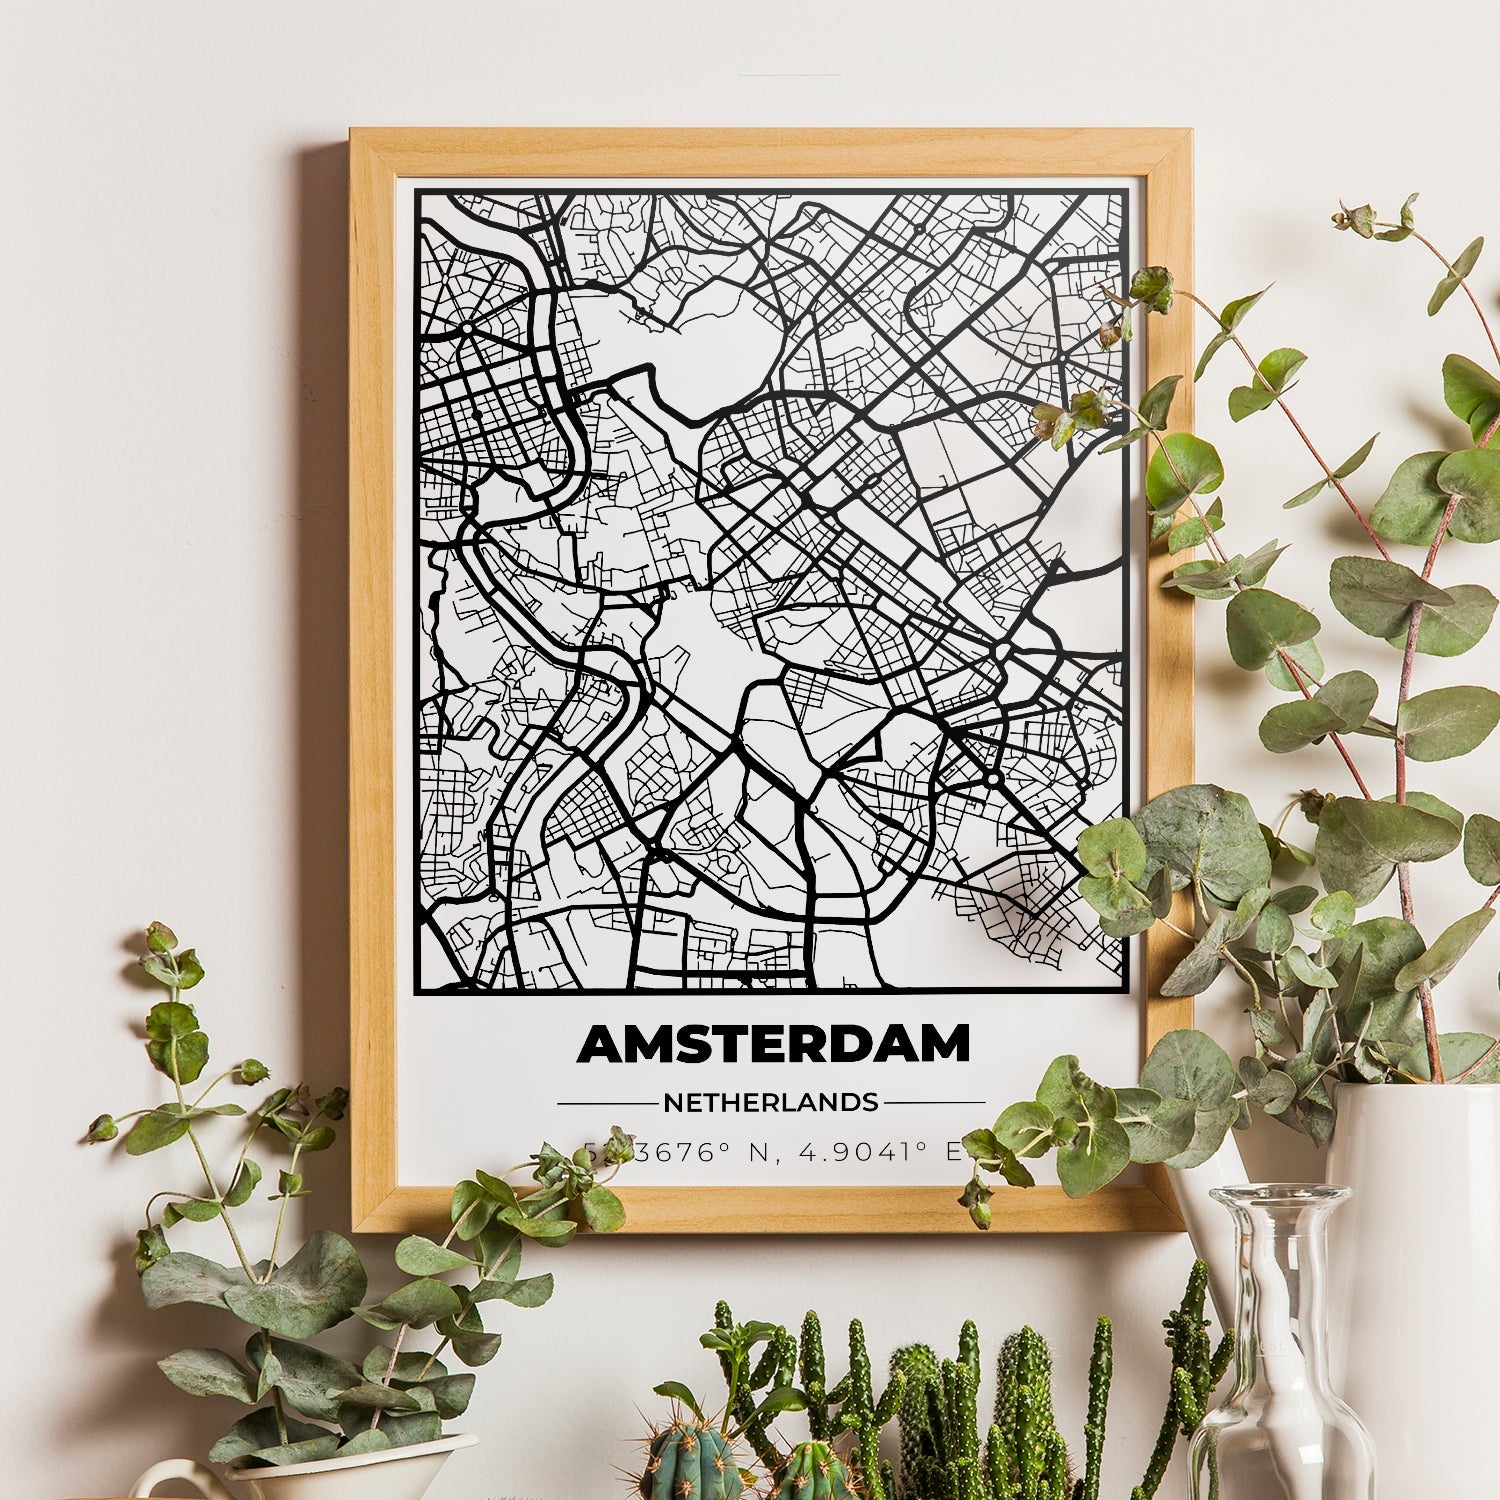 Poster Personalizzato con Mappa della Città e Coordinate